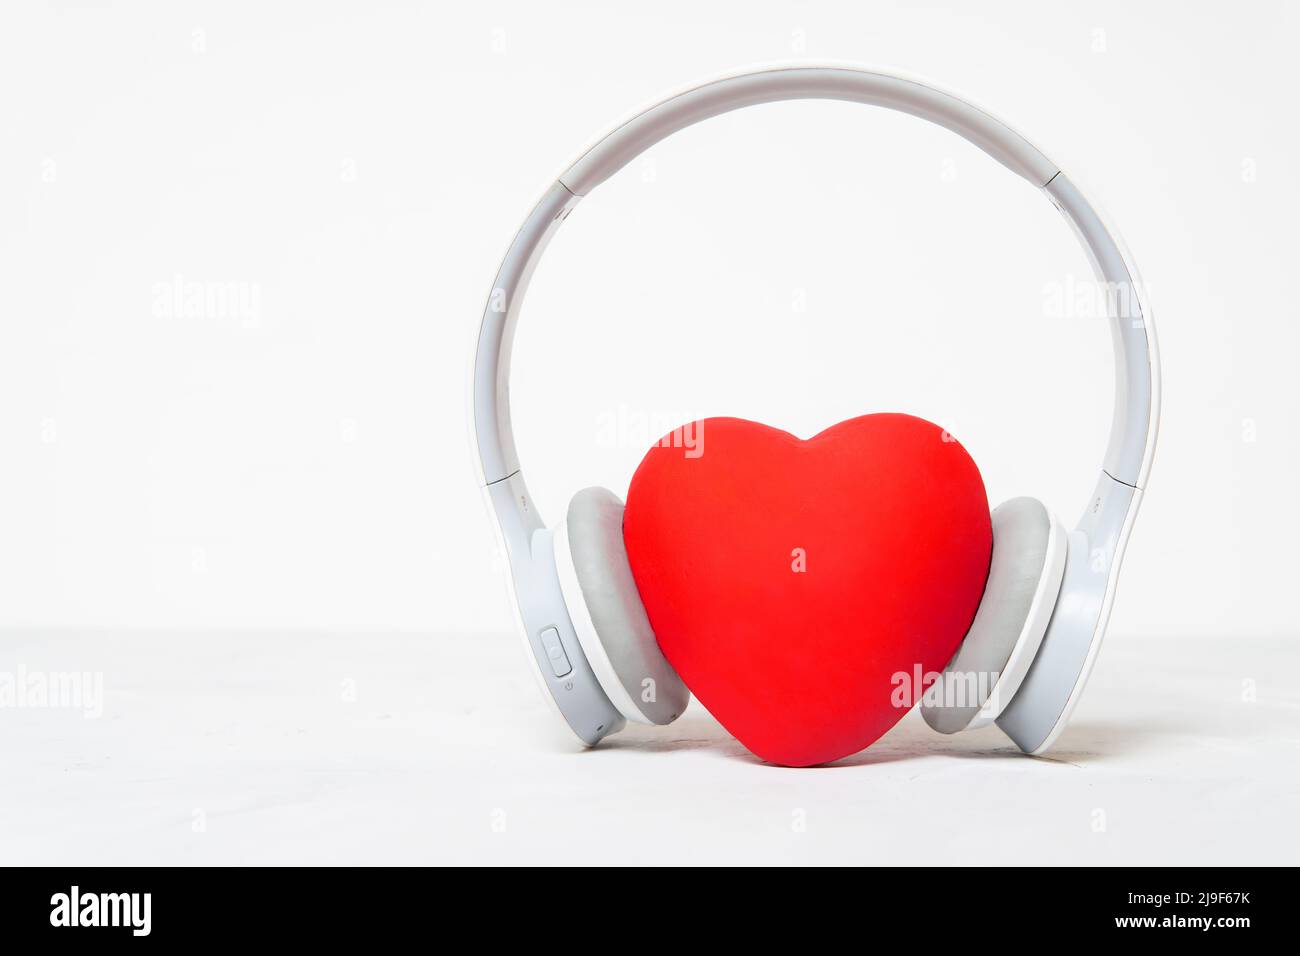 Cuffie wireless con un grande cuore rosso isolato su sfondo neutro con spazio di copia. Ascolta il tuo cuore concetto. Foto Stock